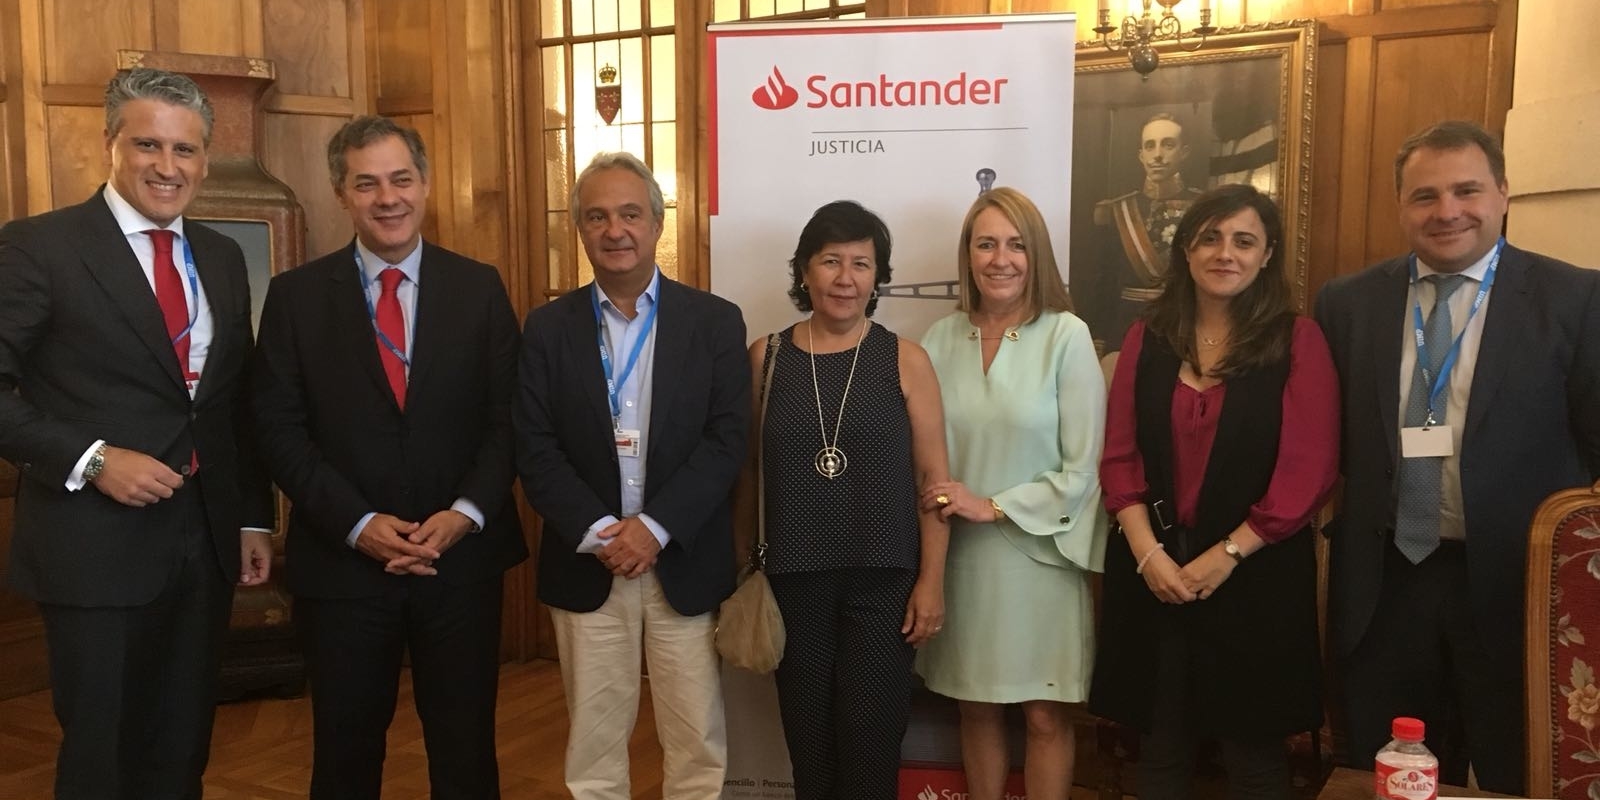 2018 Curso Santander